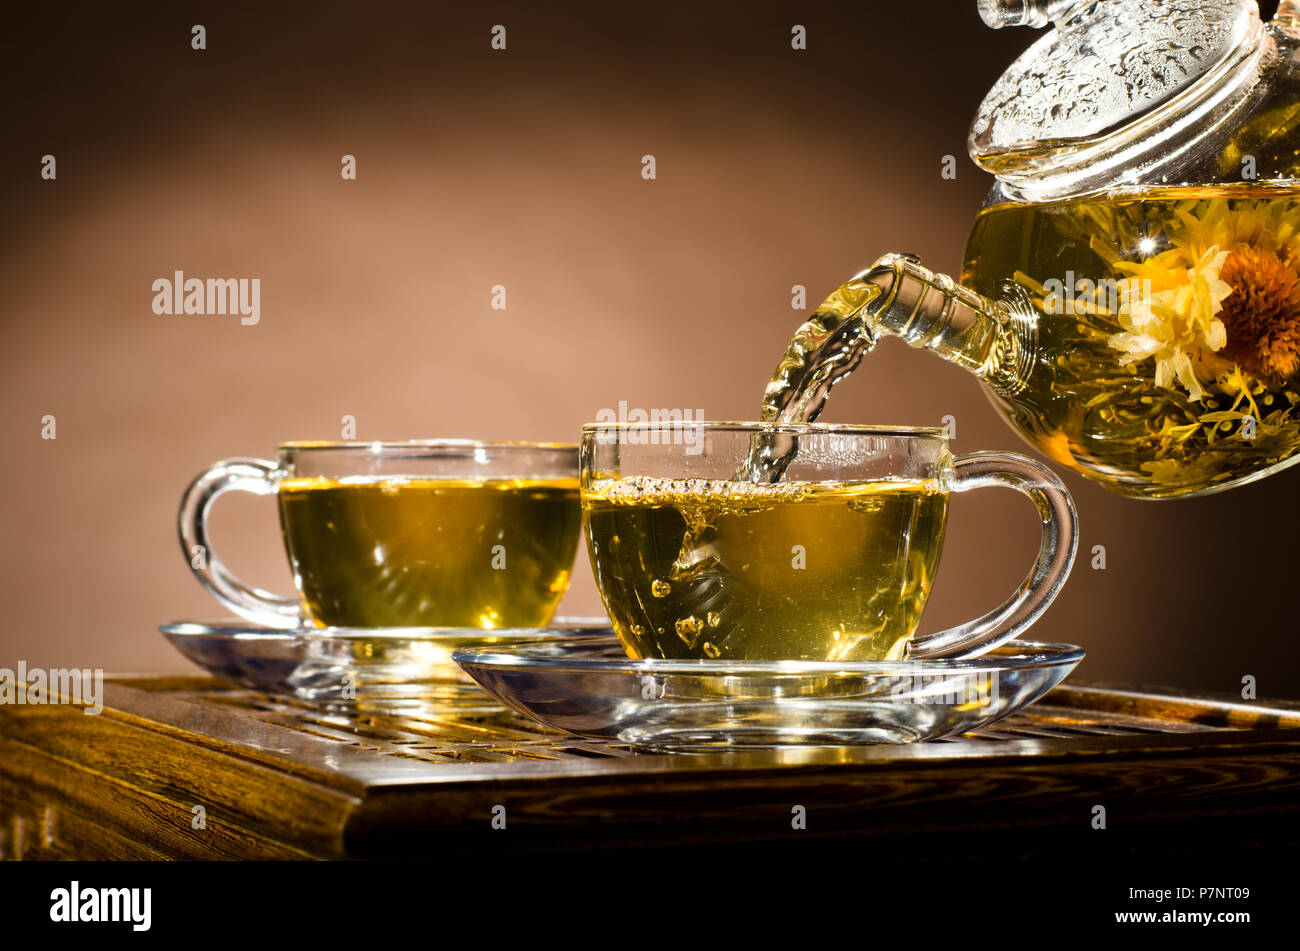 Photo horizontale, de la théière en verre tasse thé vert en débit sur fond brun, cérémonie du thé Banque D'Images